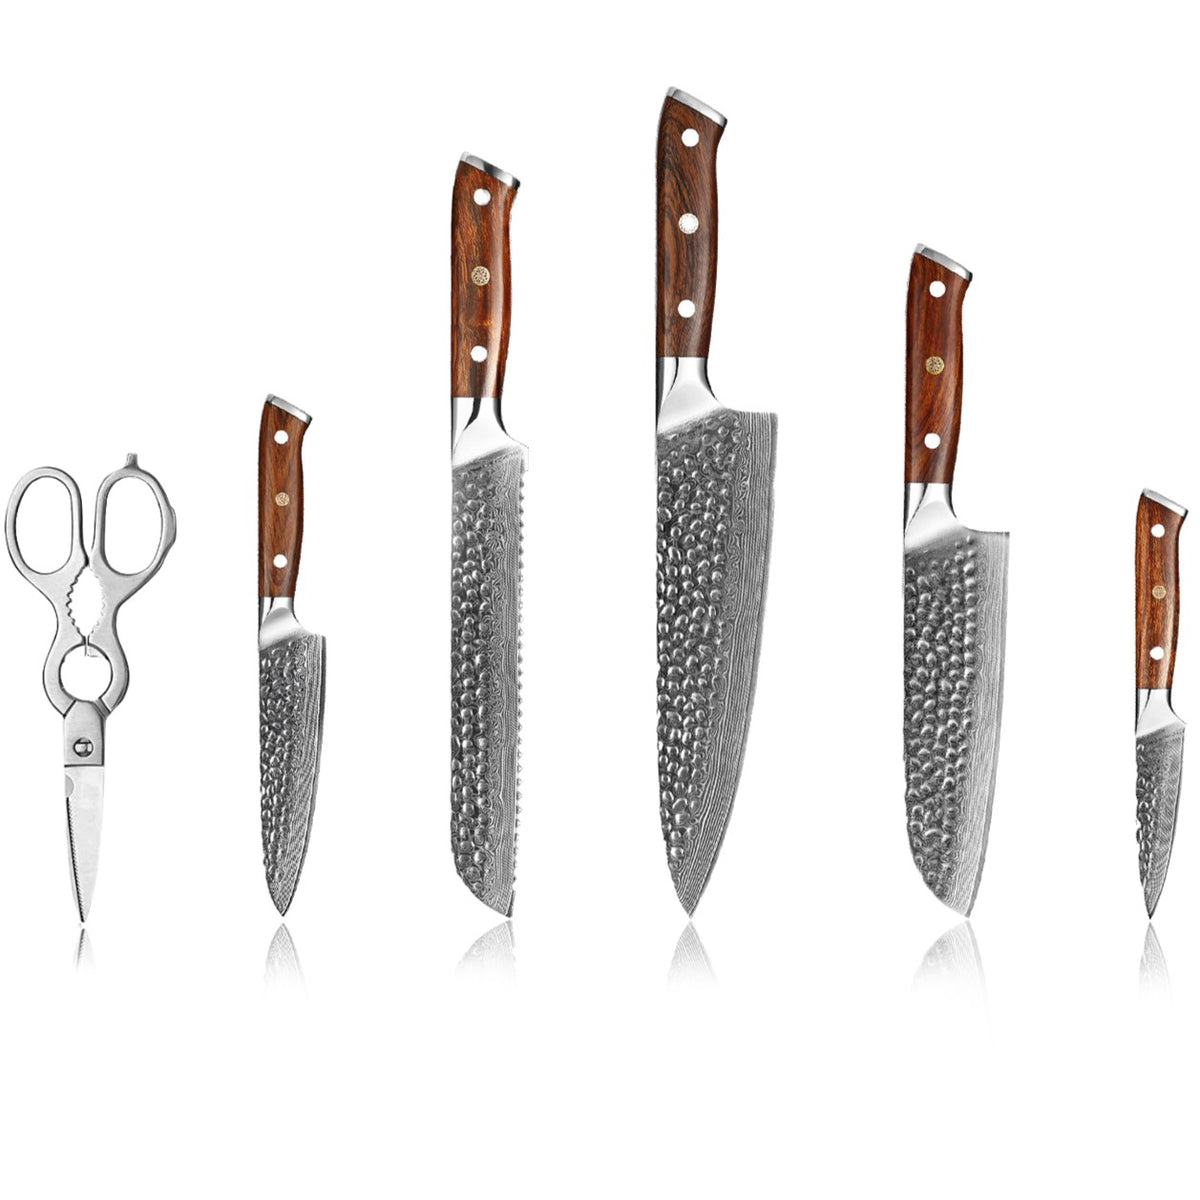 Messerset 6-teilig mit Küchenschere multifunktional kaufen für die Küche